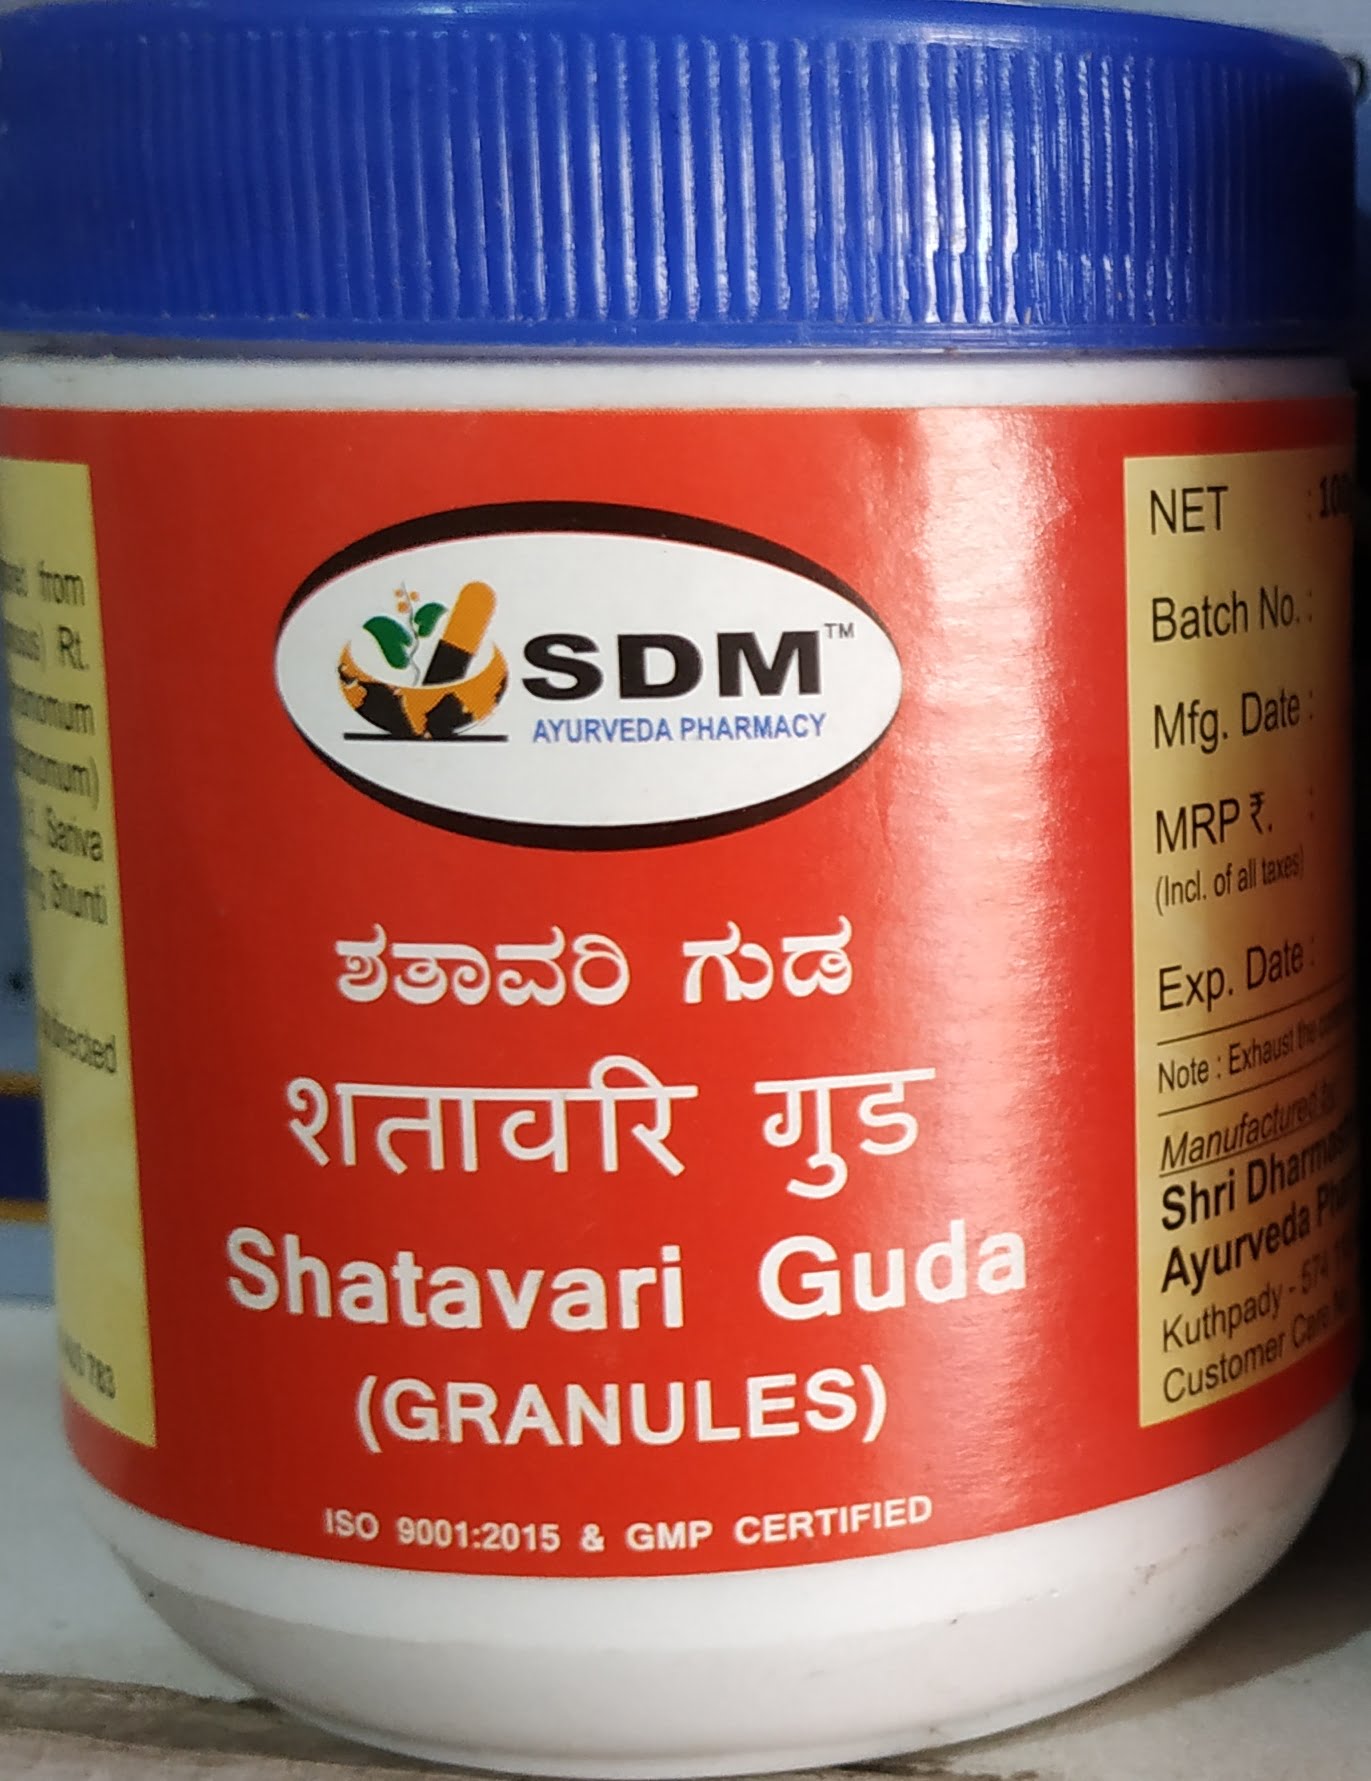 shatavari guda granules 200 gm upto 15% off sdm ayurvedya